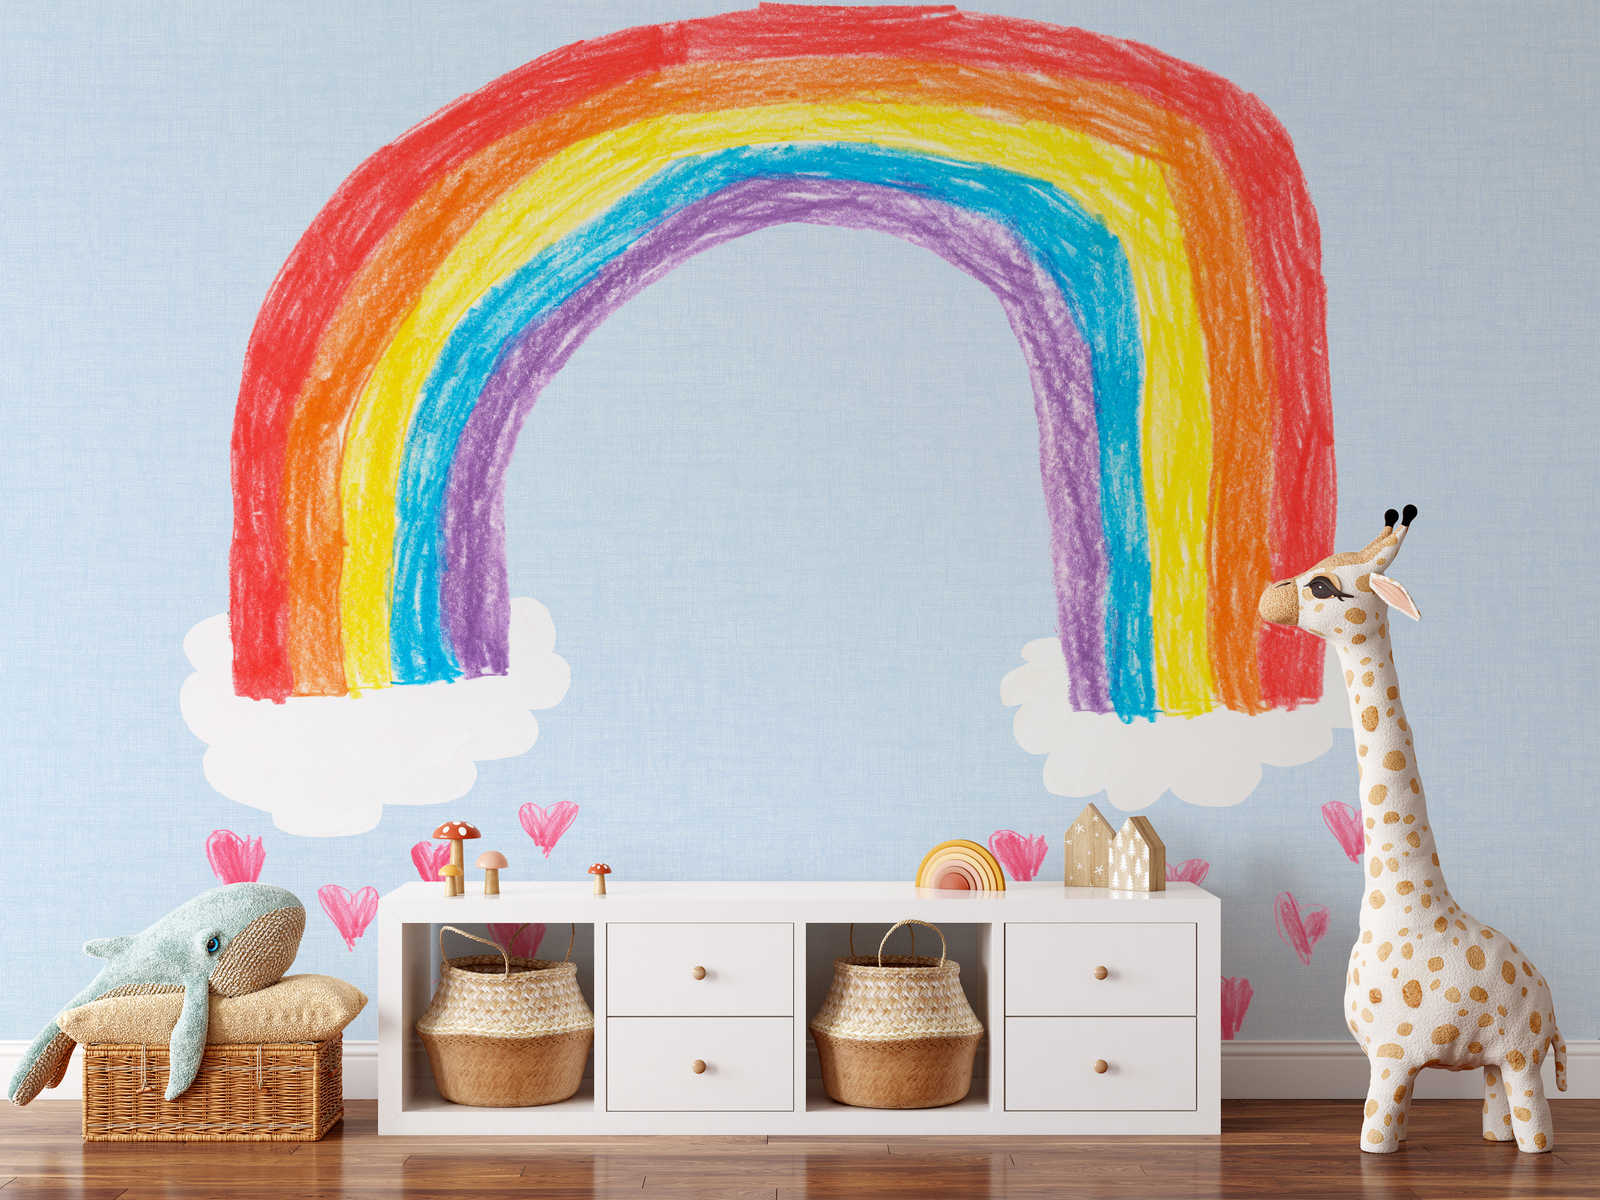             Papier peint panoramique arc-en-ciel peint par soi-même pour chambre d'enfant
        